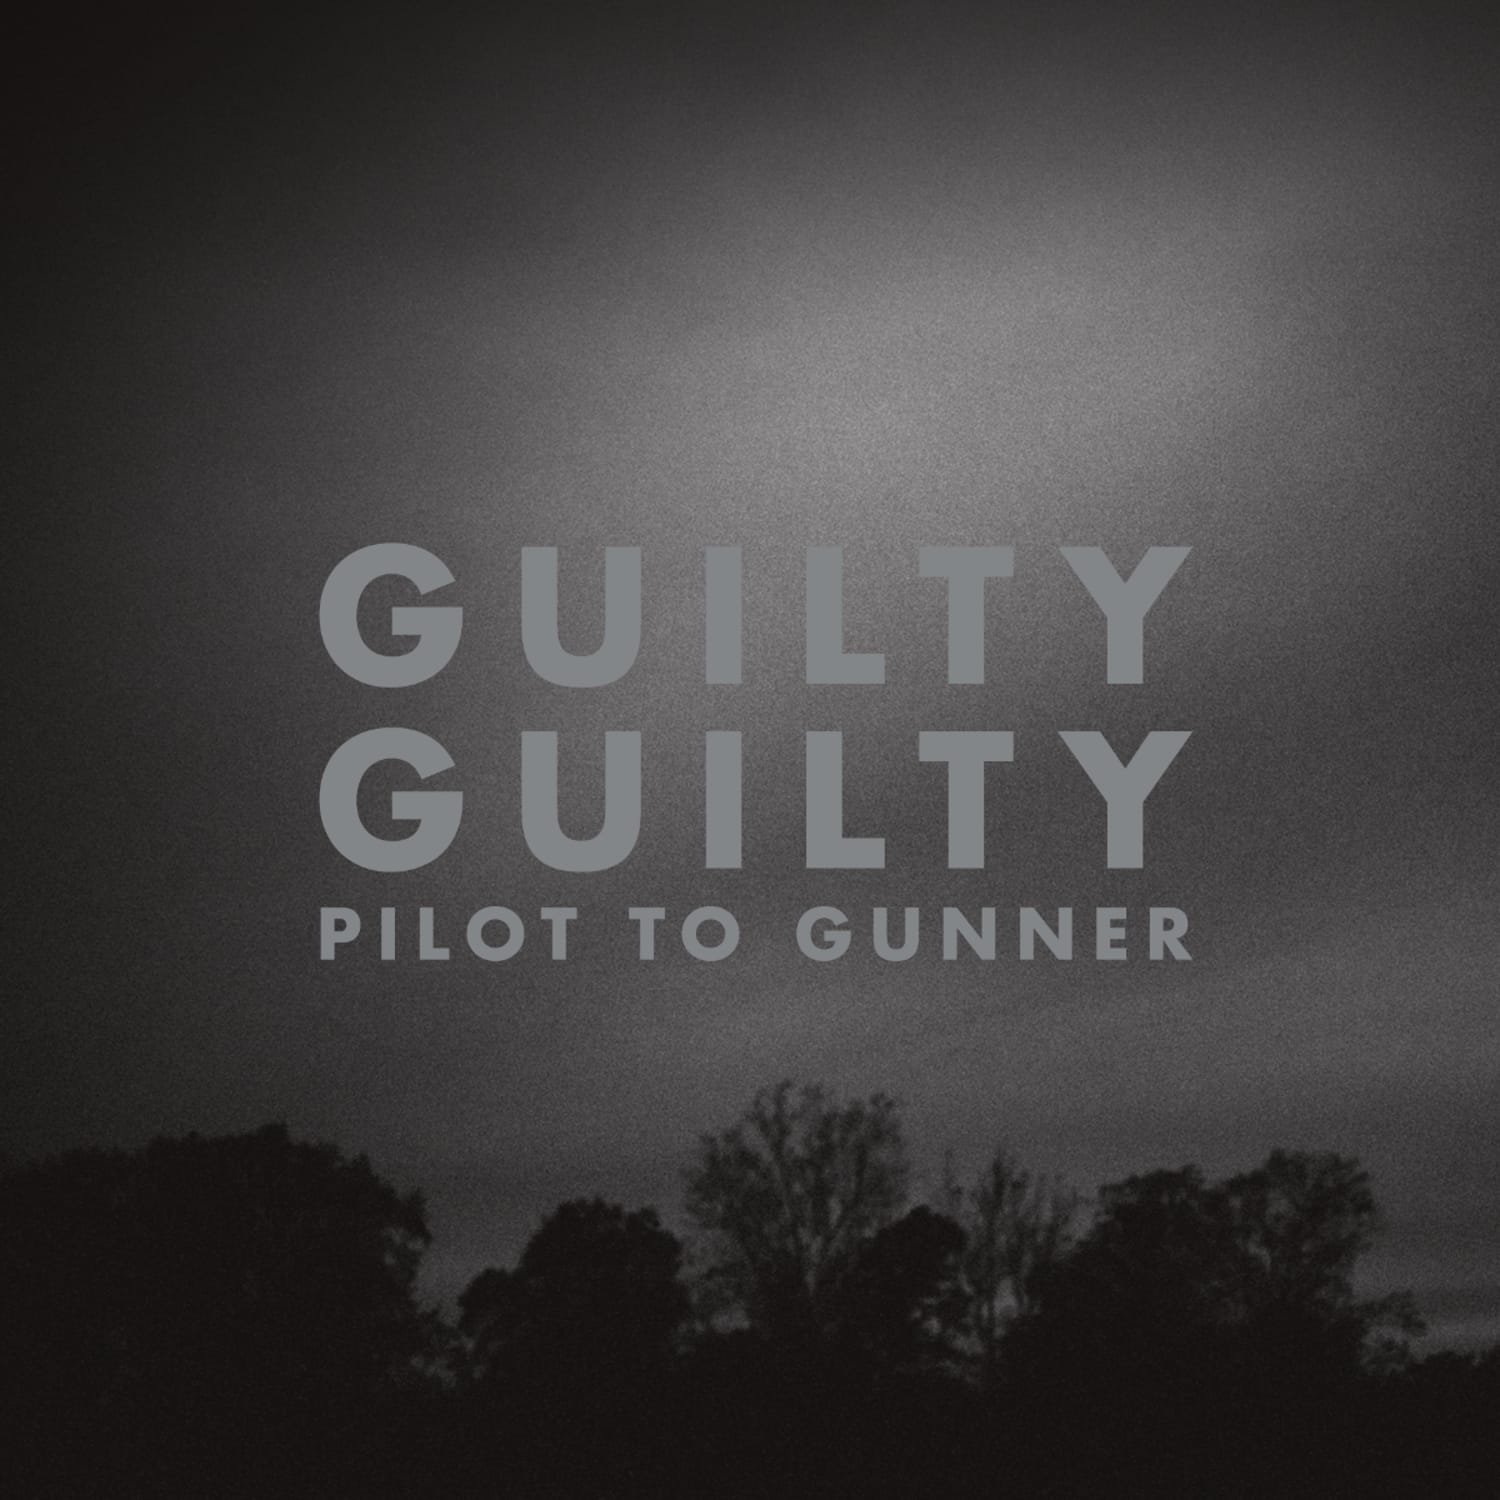 Pilot to Gunner - GUILTY GUILTY 